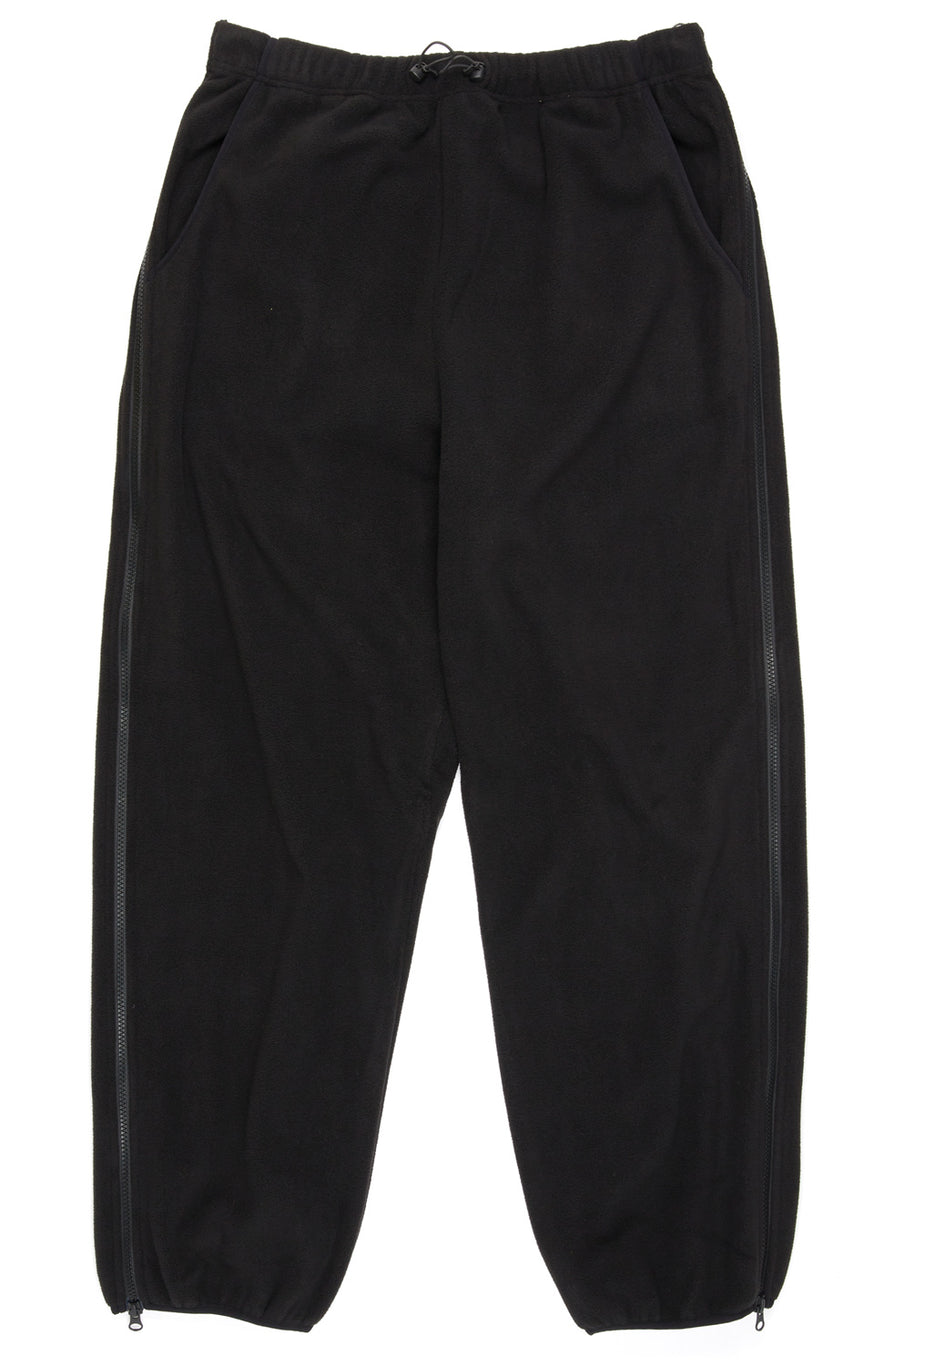 Adsum Men's Zip Out Pants - Black